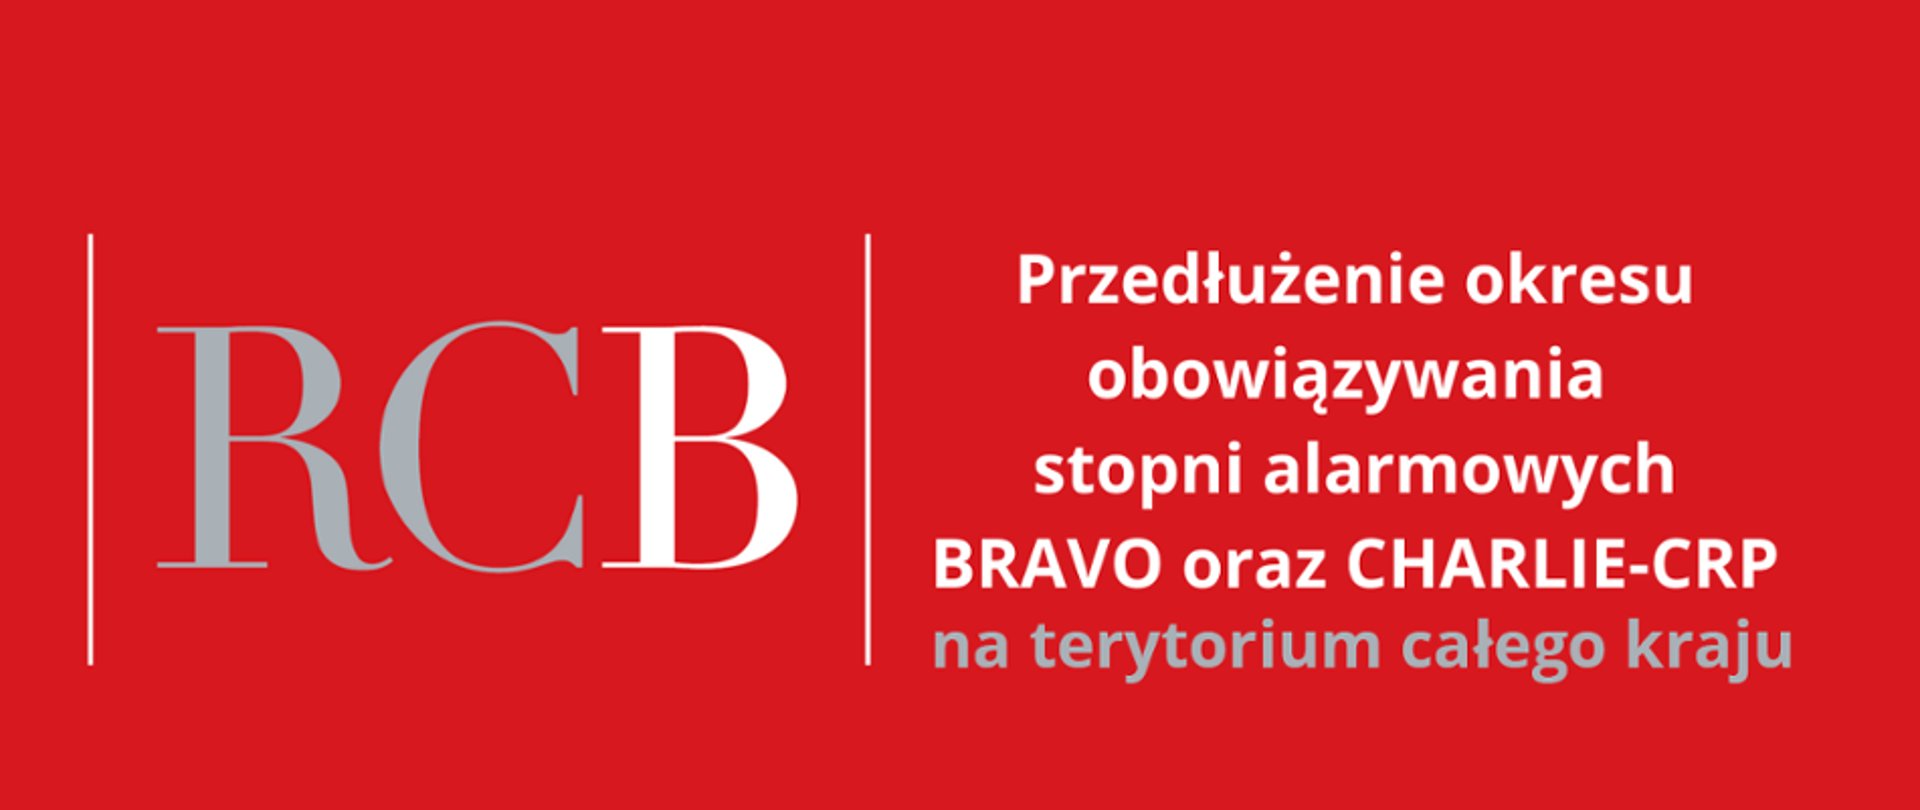 Informacja o przedłużeniu stopni alarmowych Bravo oraz Charlie-CRB